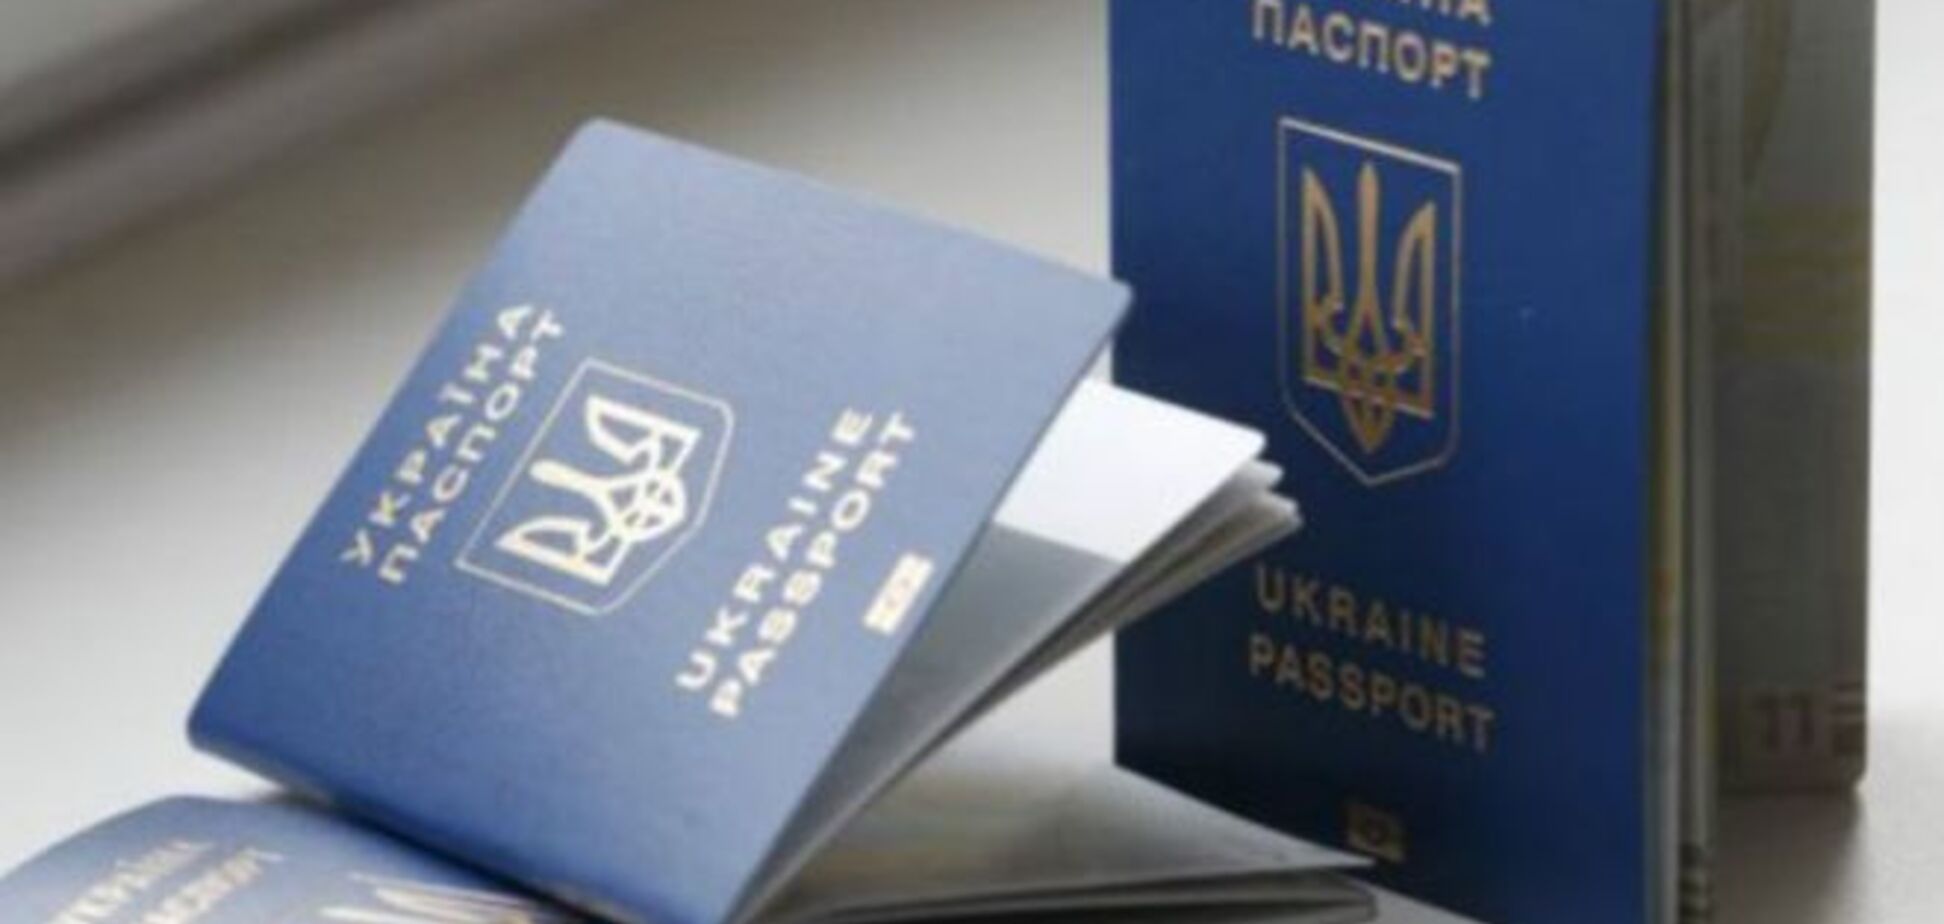 ЕС признал украинские биометрические паспорта лучшими в мире 